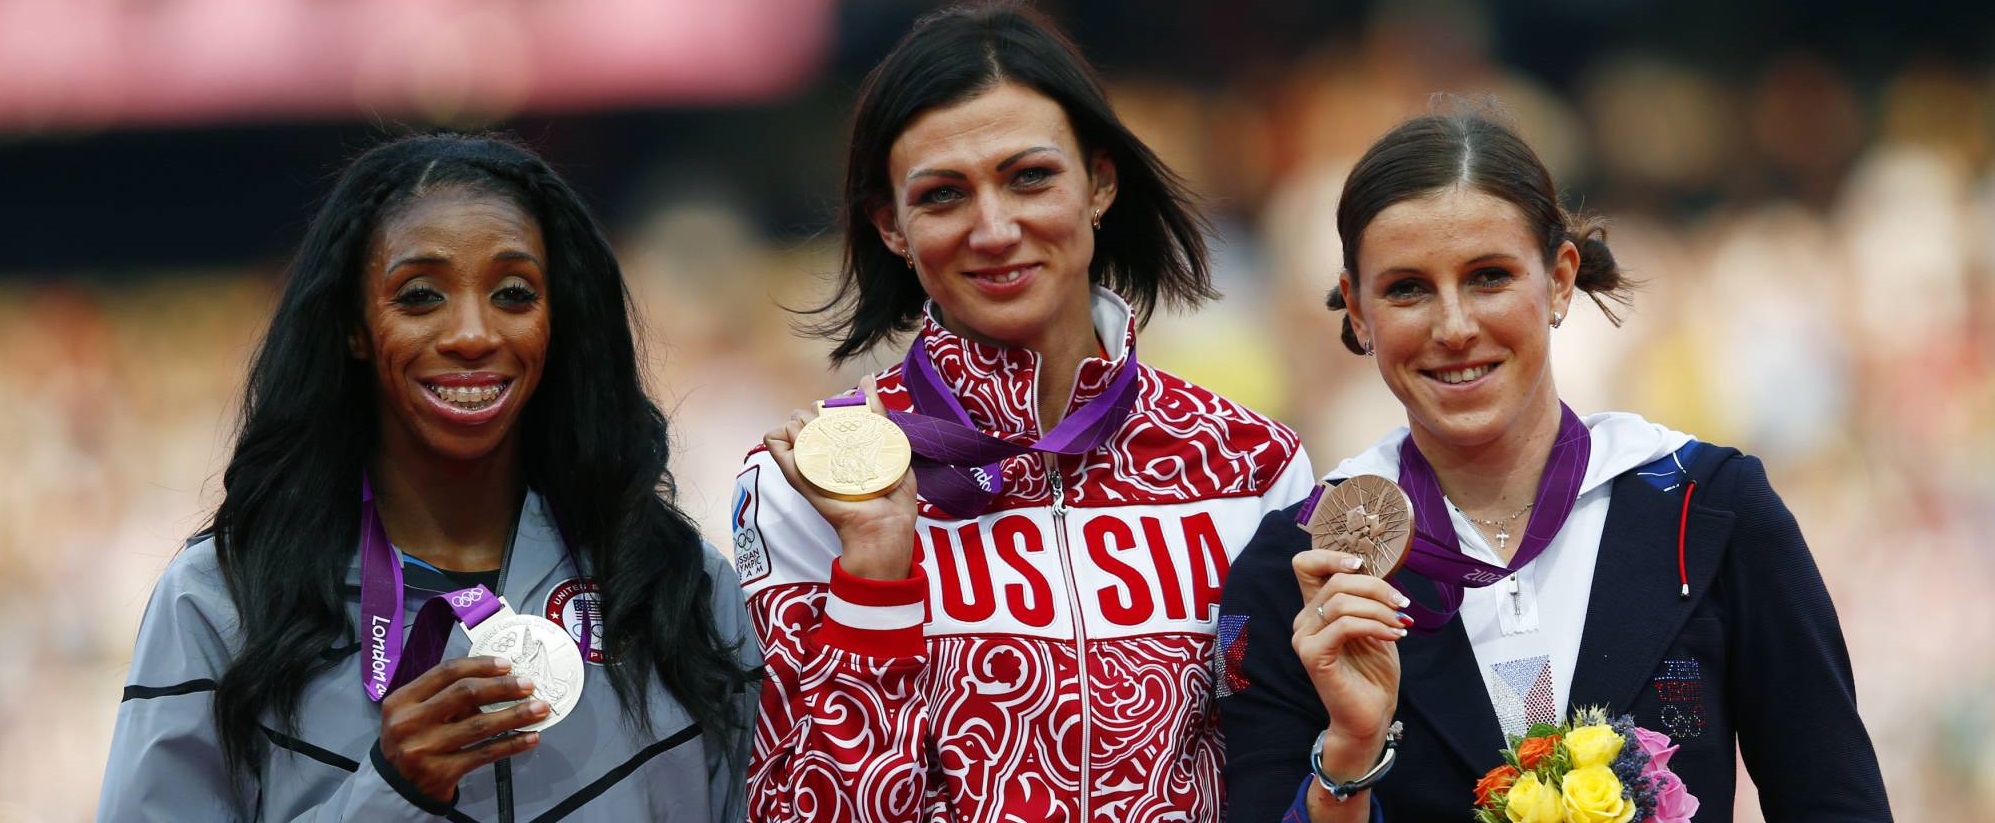 Karena Doping, Medali Emas Atlet Rusia di Olimpiade 2012 Ini Dicabut